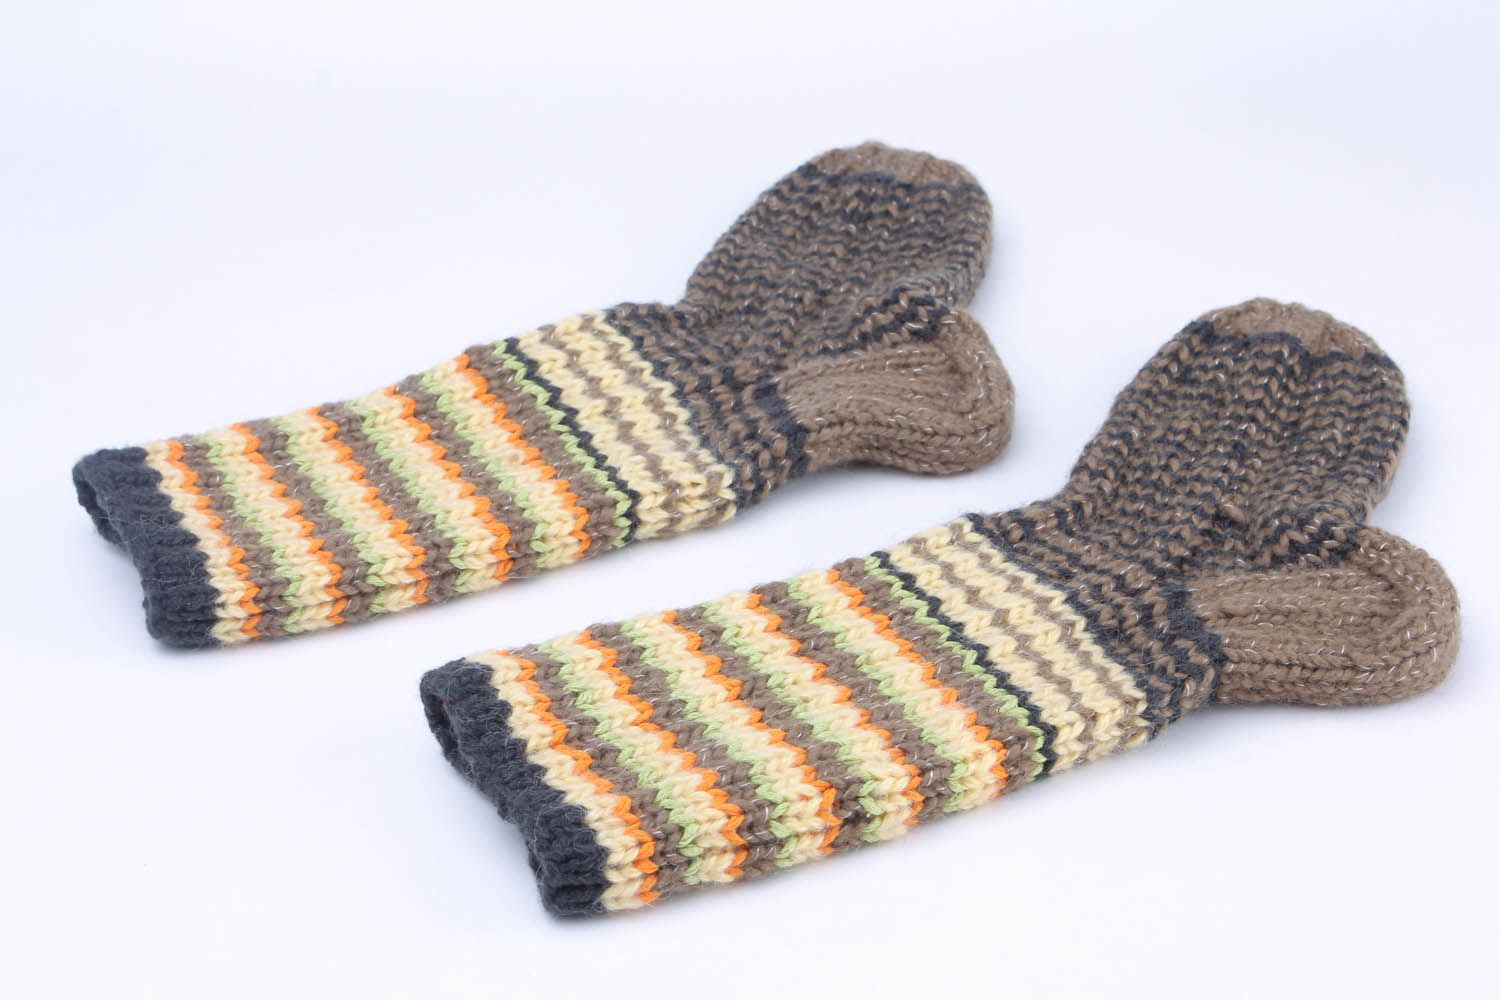 Knitted women's socks photo 4